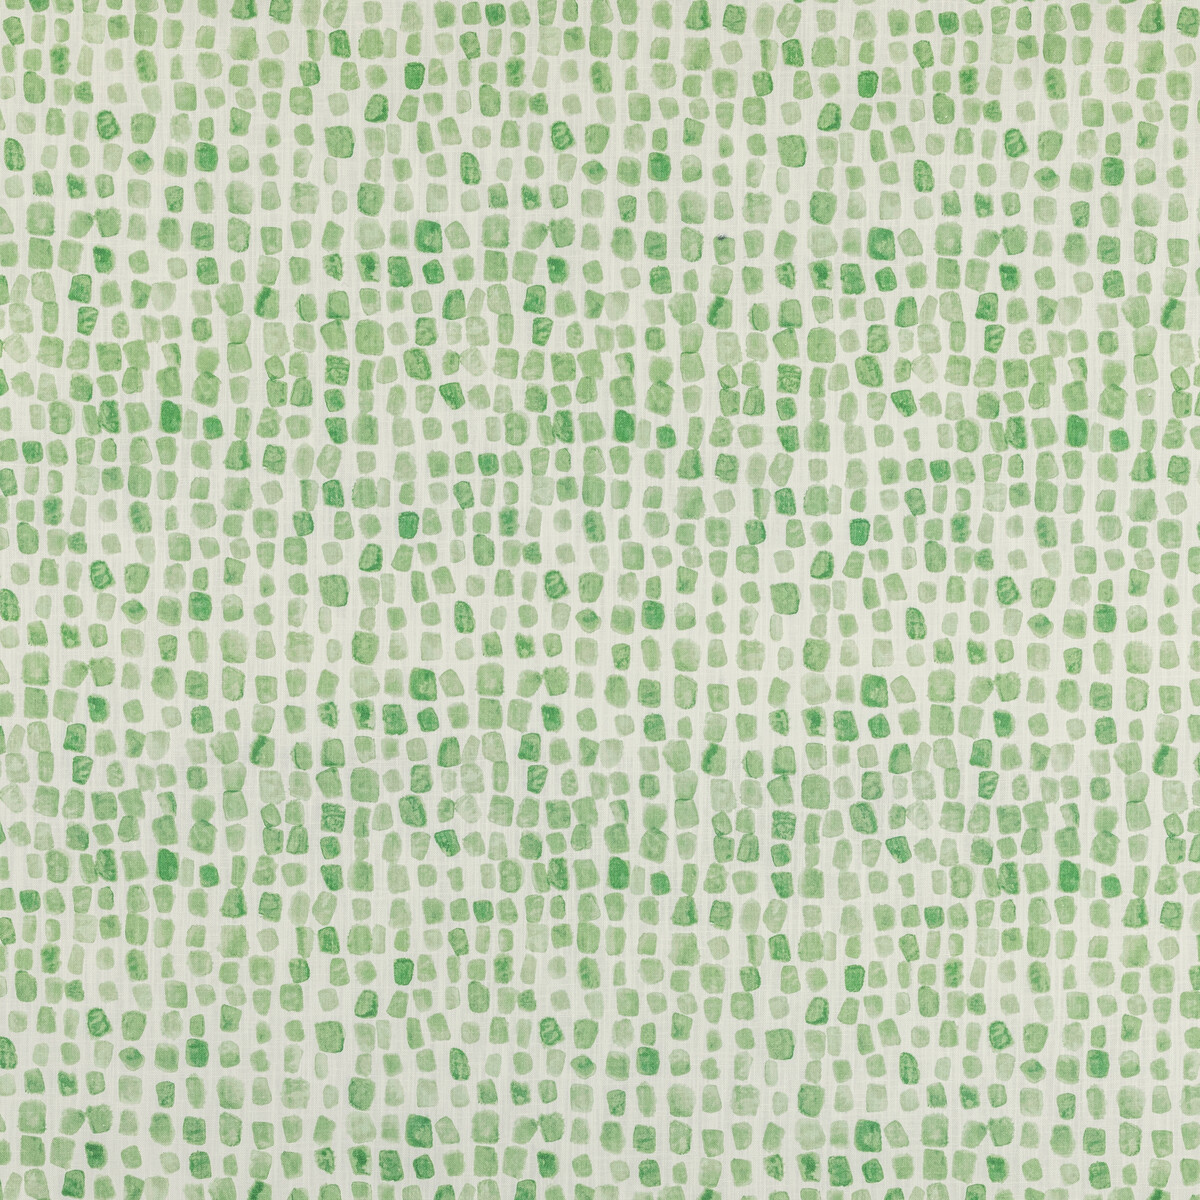 Kravet Basics Shodo Path.3.0 Shodo Path Multipurpose Fabric in Grass/White/Green